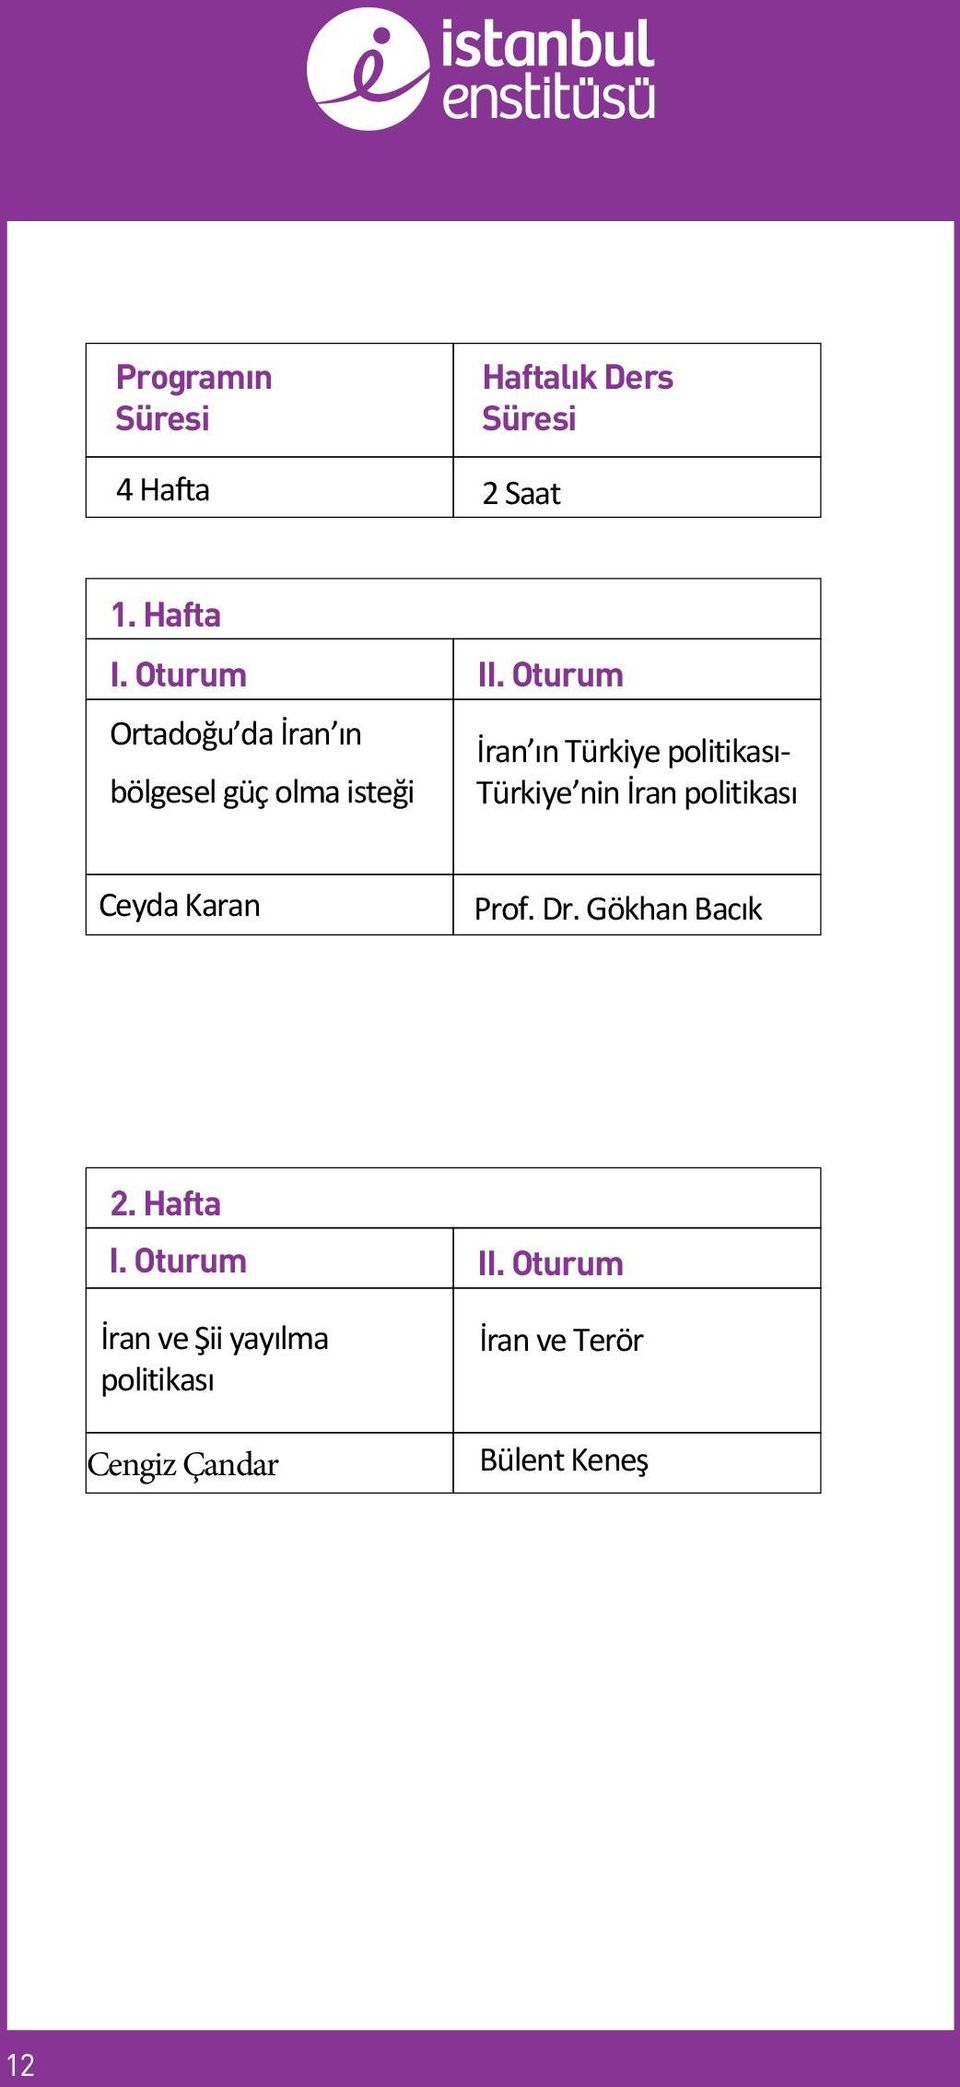 Oturum İran ın Türkiye politikası- Türkiye nin İran politikası Ceyda Karan Prof.